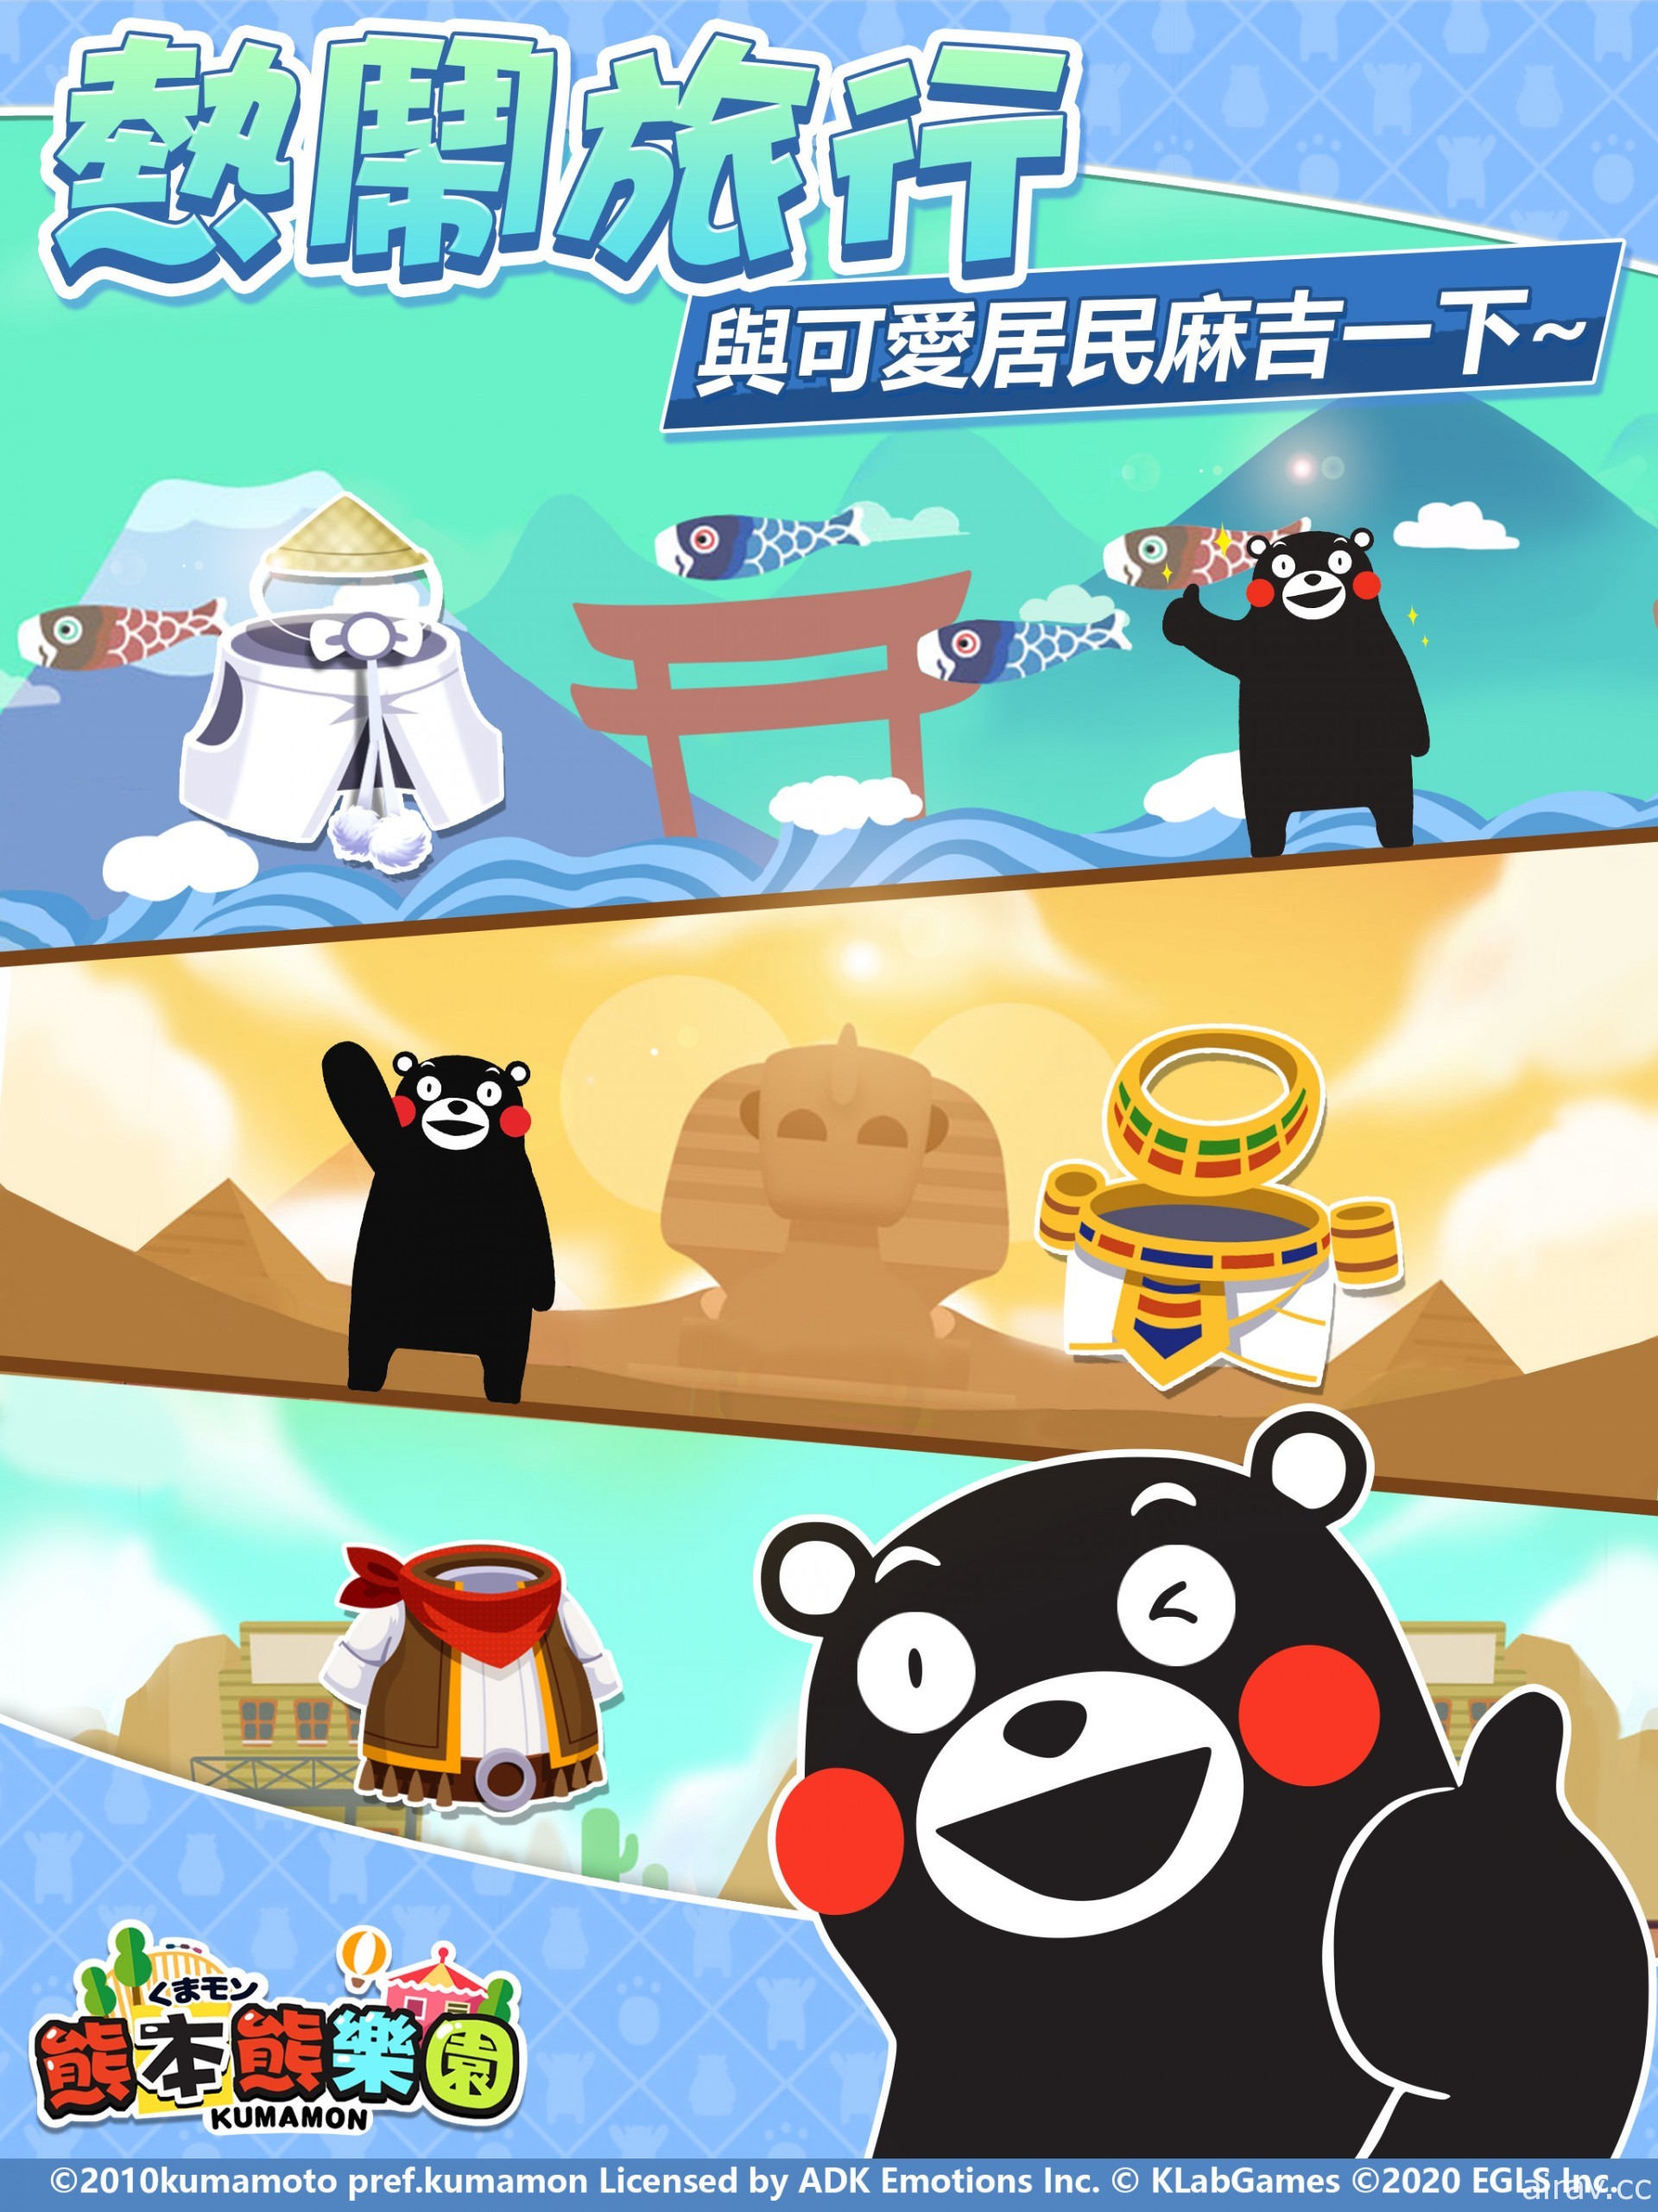 Kumamon 正版授权三消经营游戏《熊本熊乐园》确定在台港澳地区推出